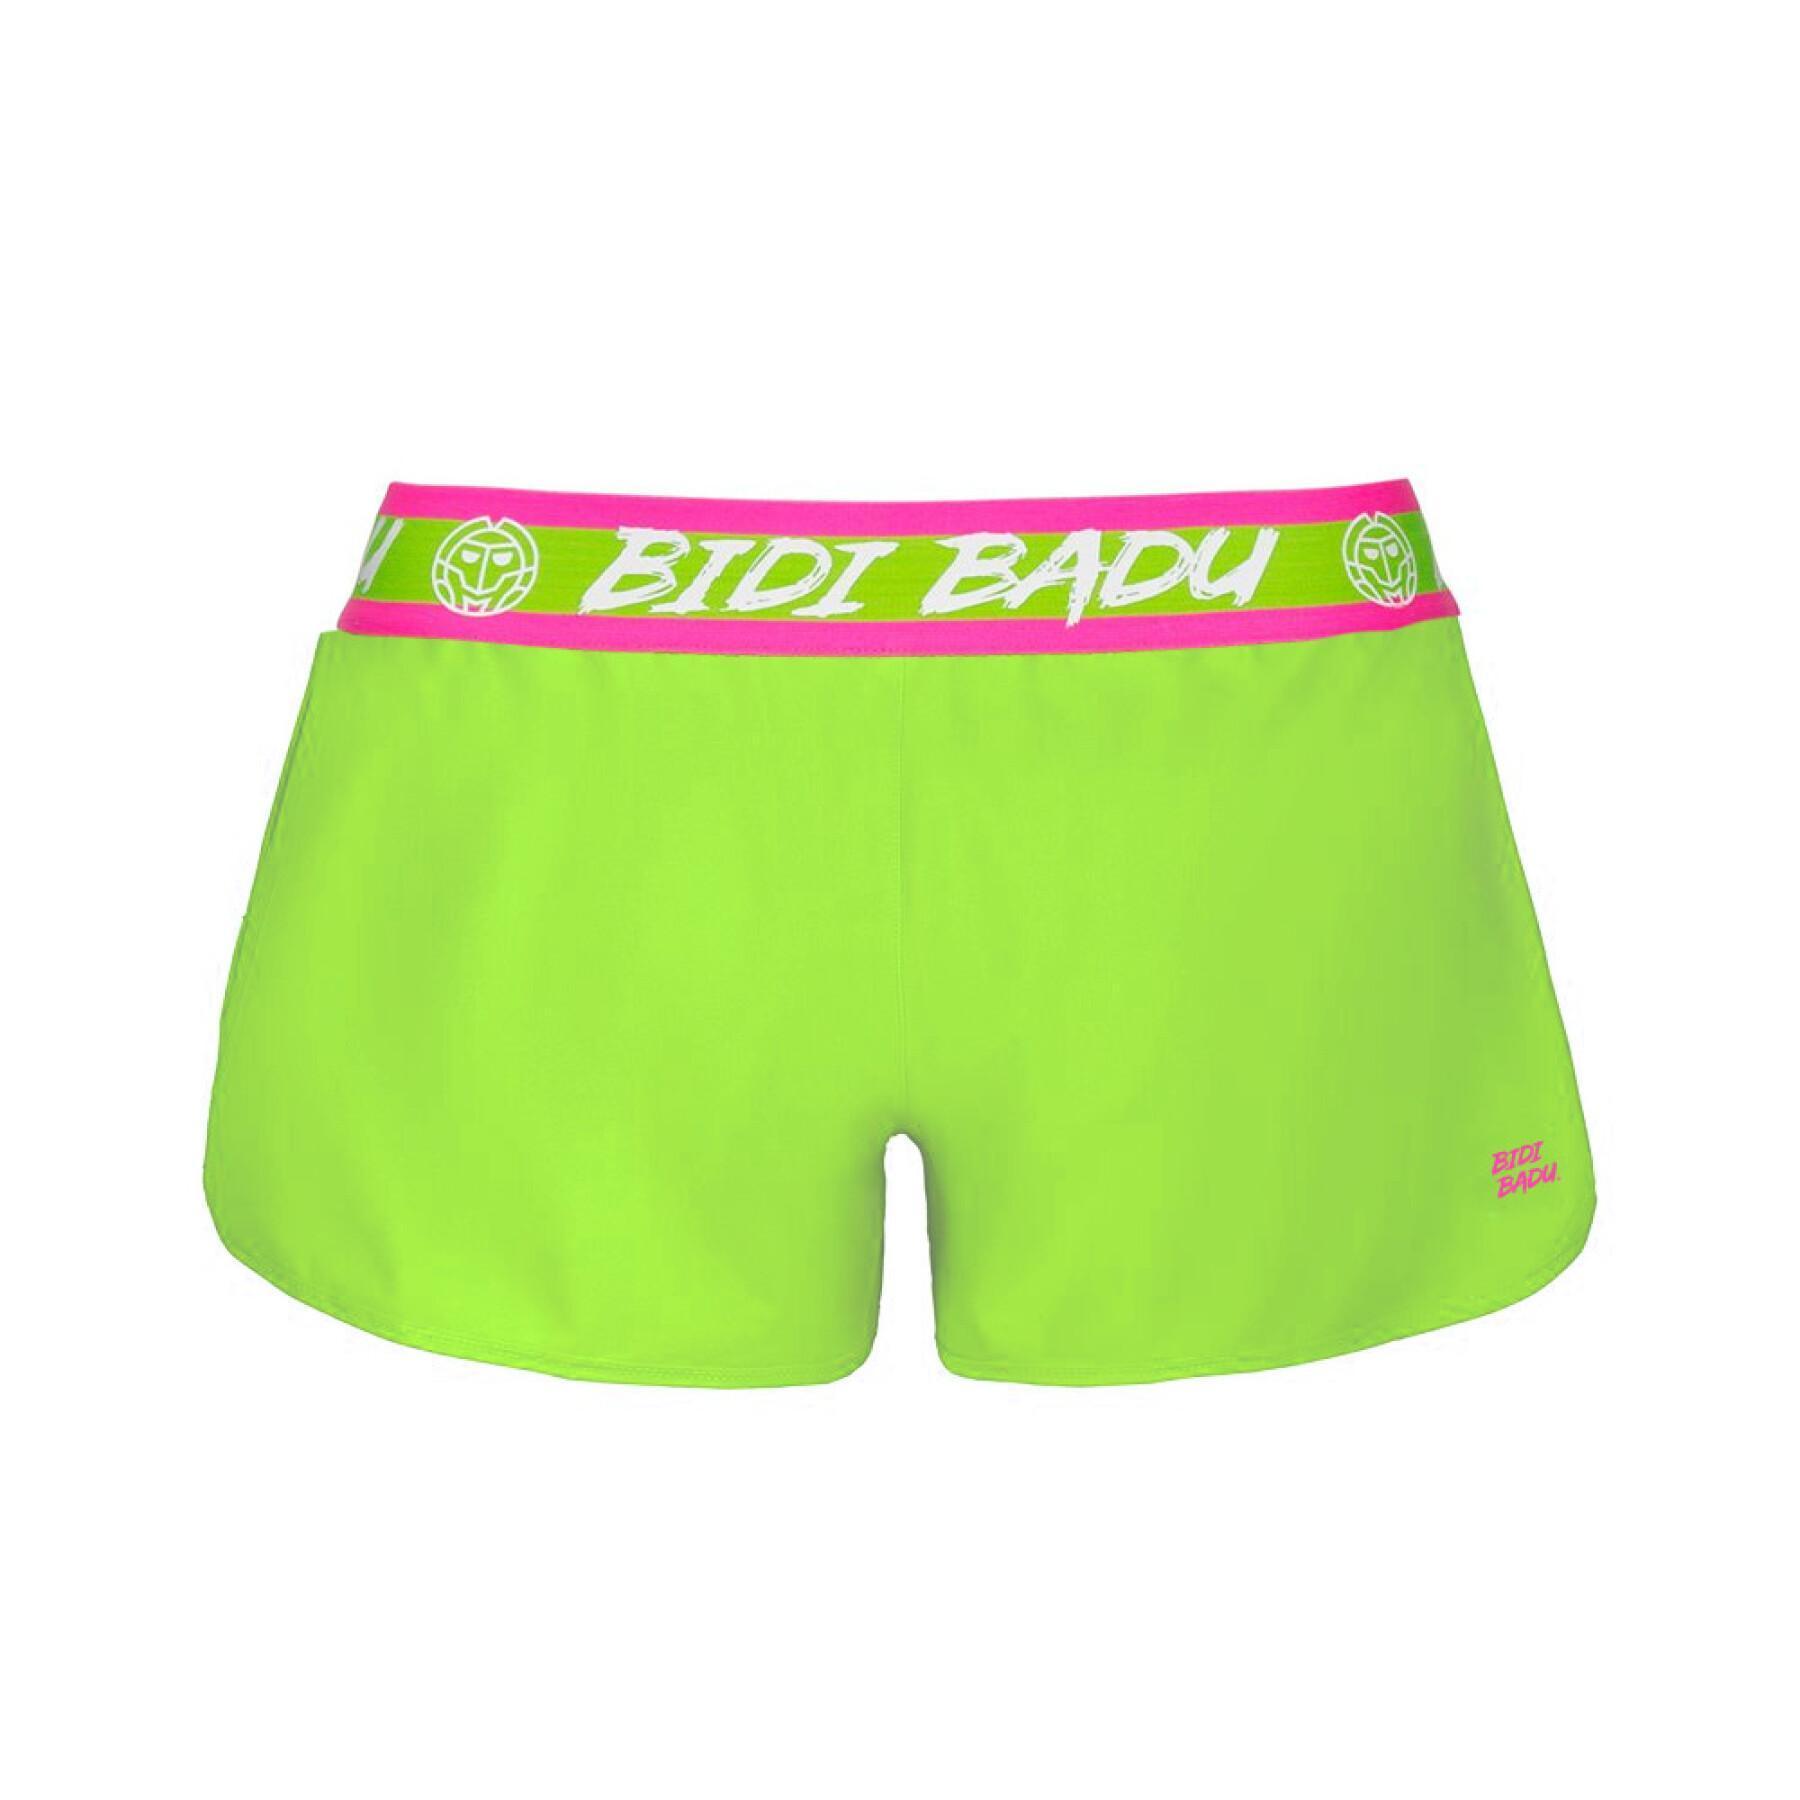 Women's 2-in-1 shorts Bidi Badu Tiida Tech